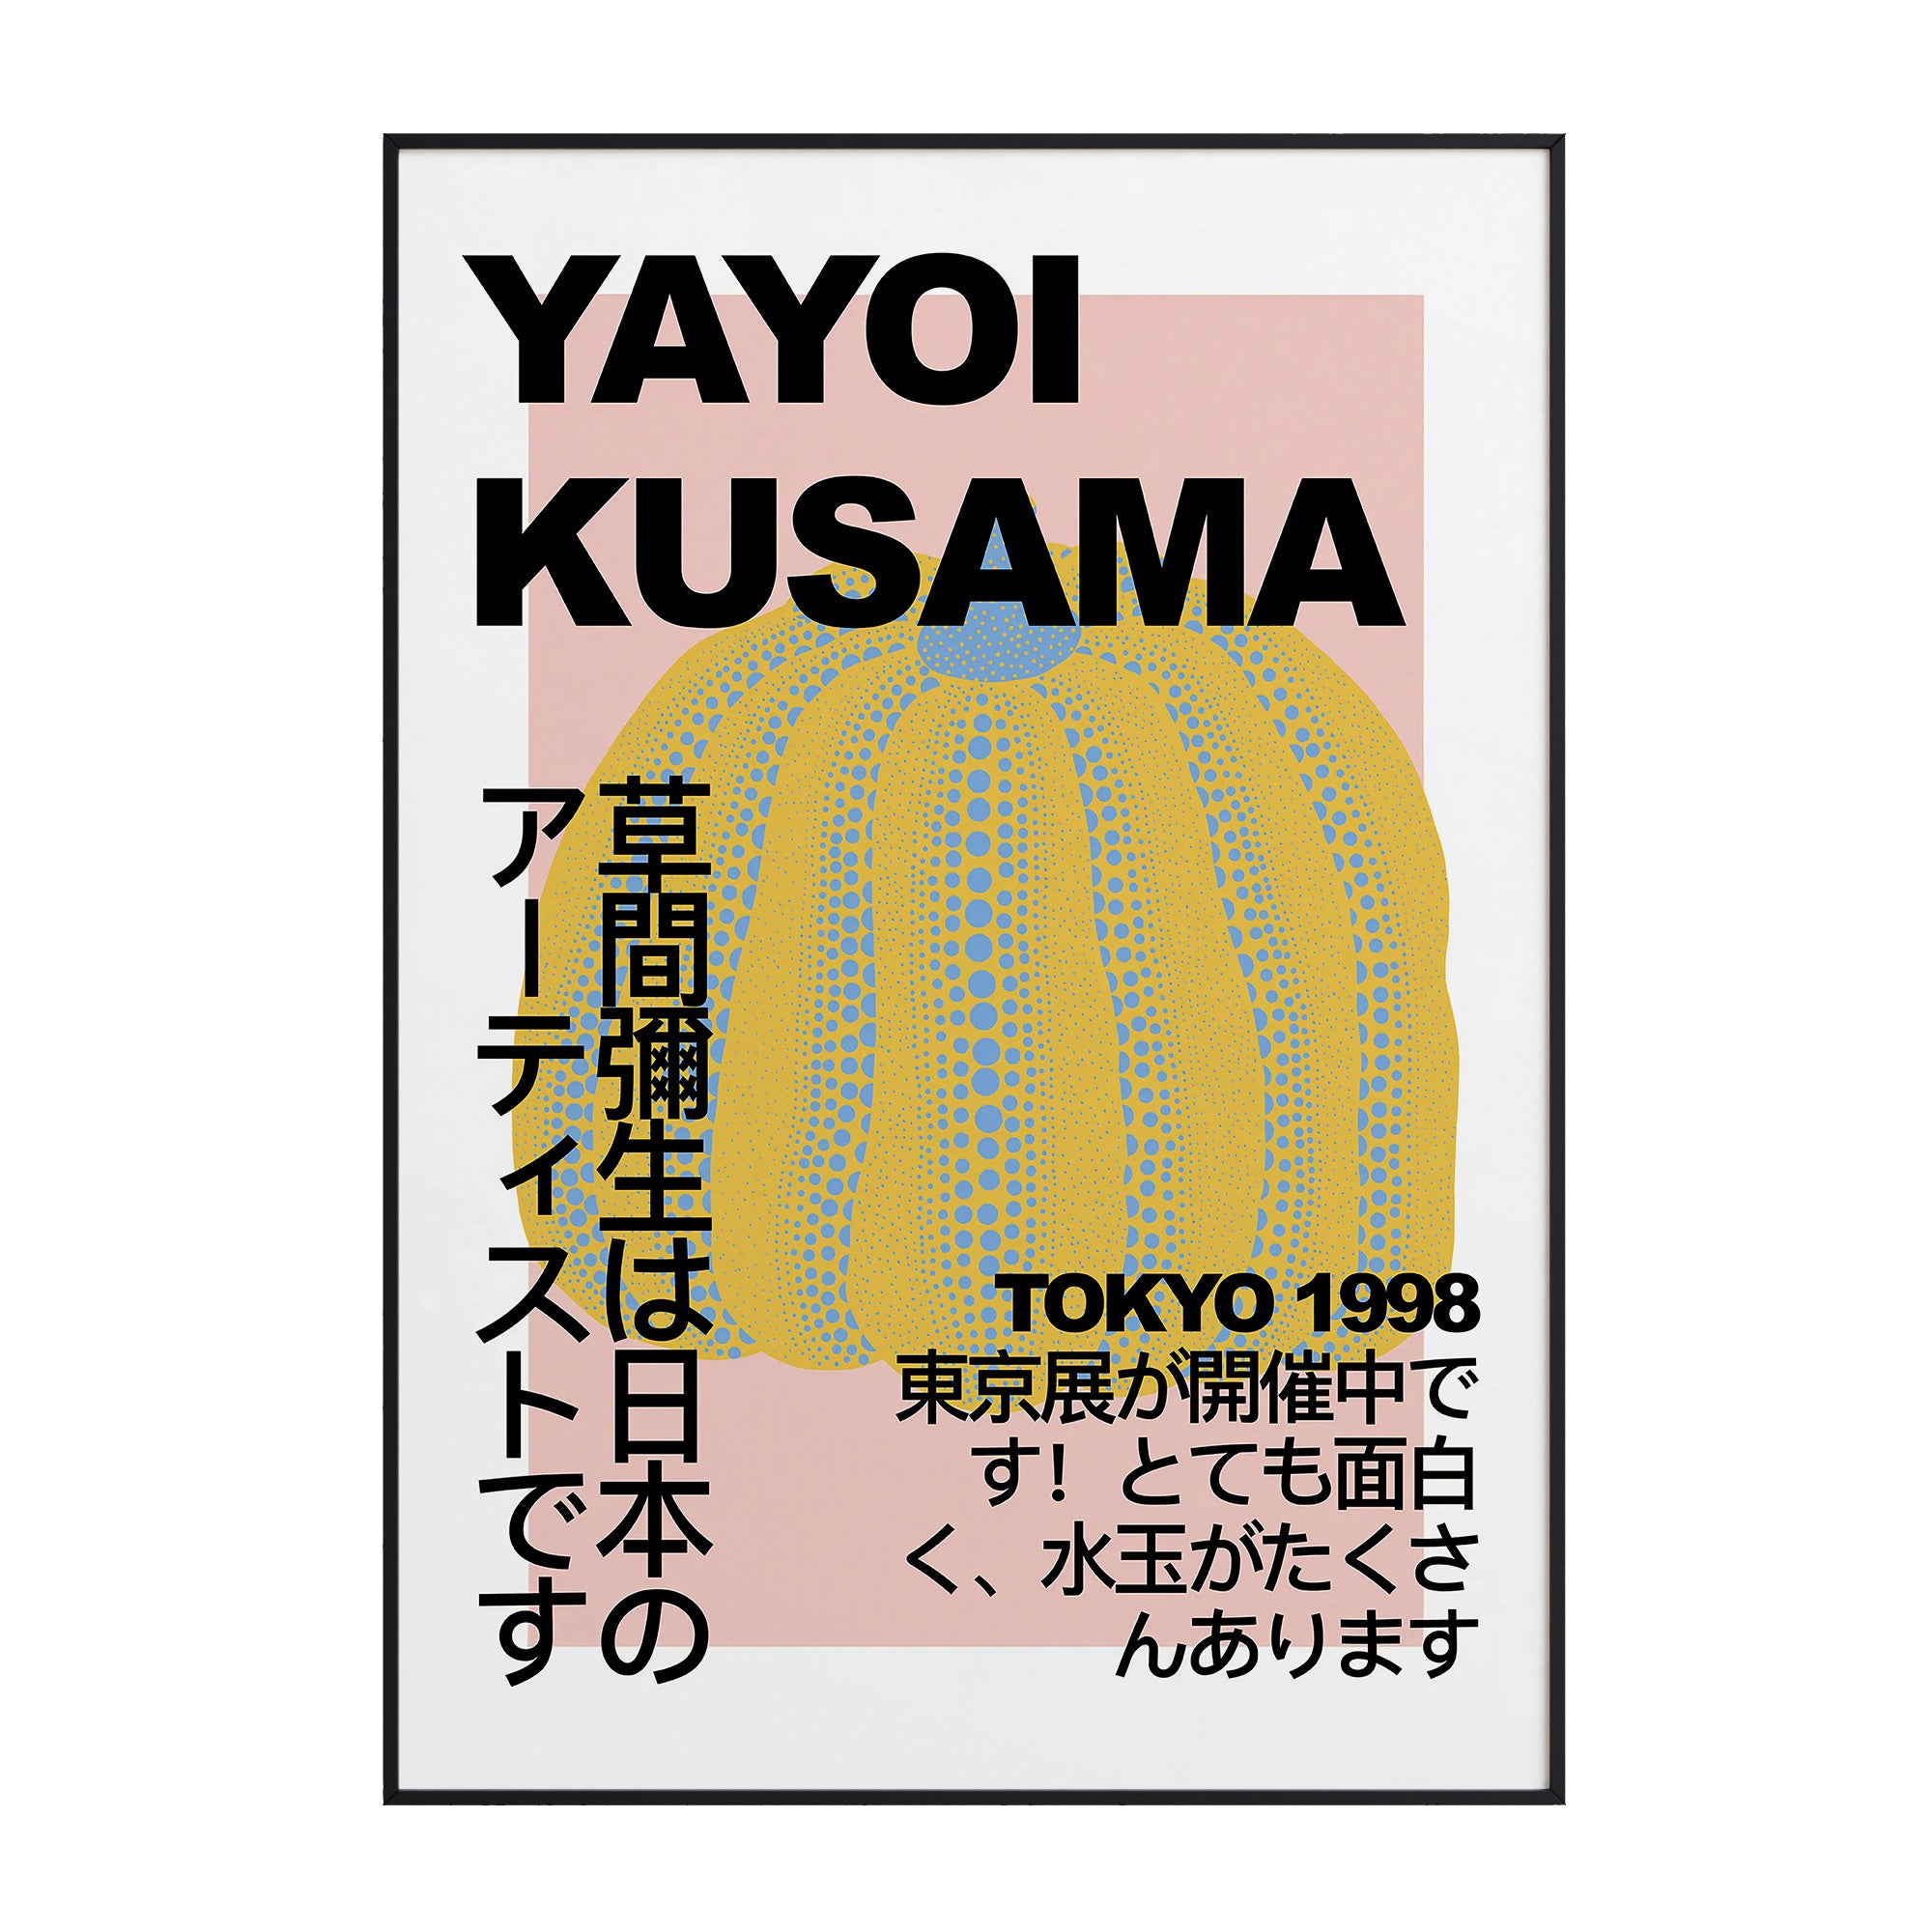 Yayoi Kusama - Pumpkin Tokyo